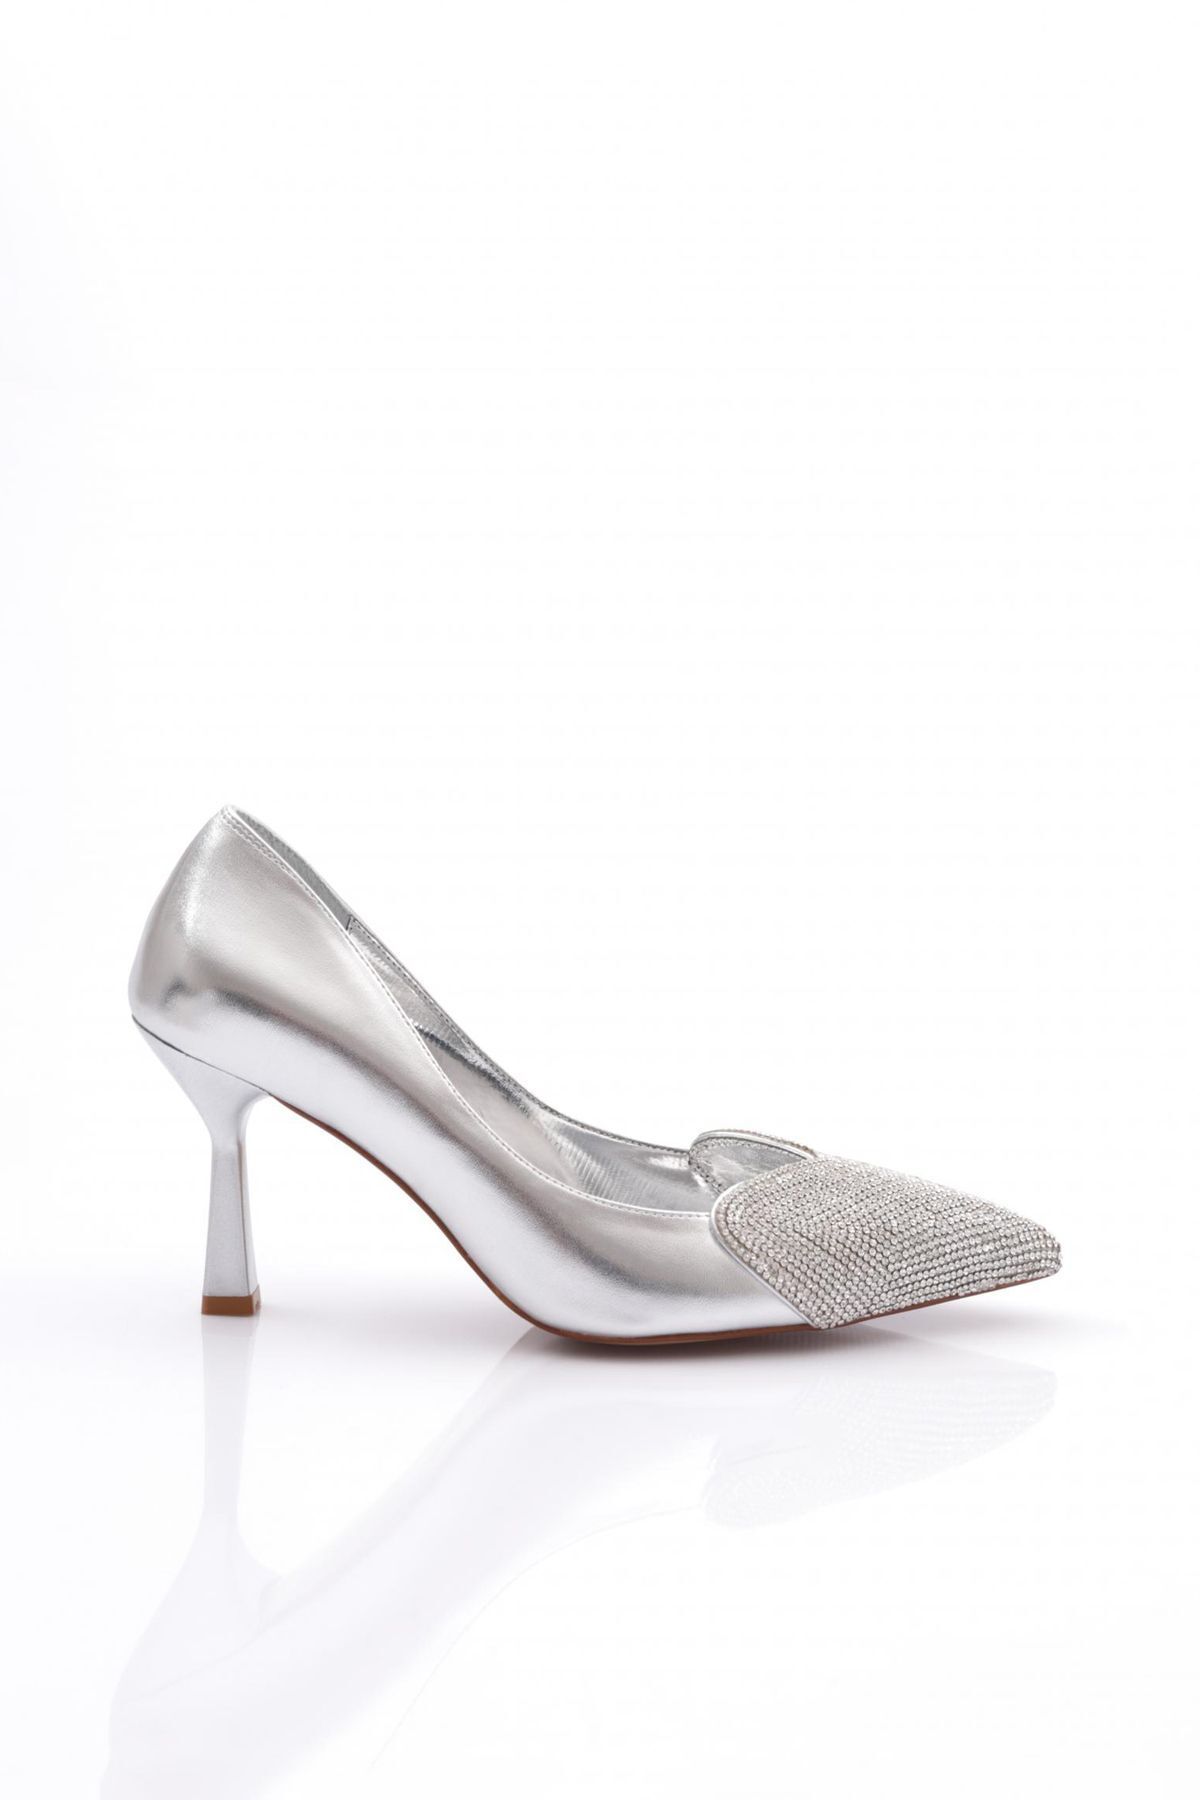 Dgn 7051 Kadın Önü Taşlı Topuklu Ayakkabı Gümüş Metalik